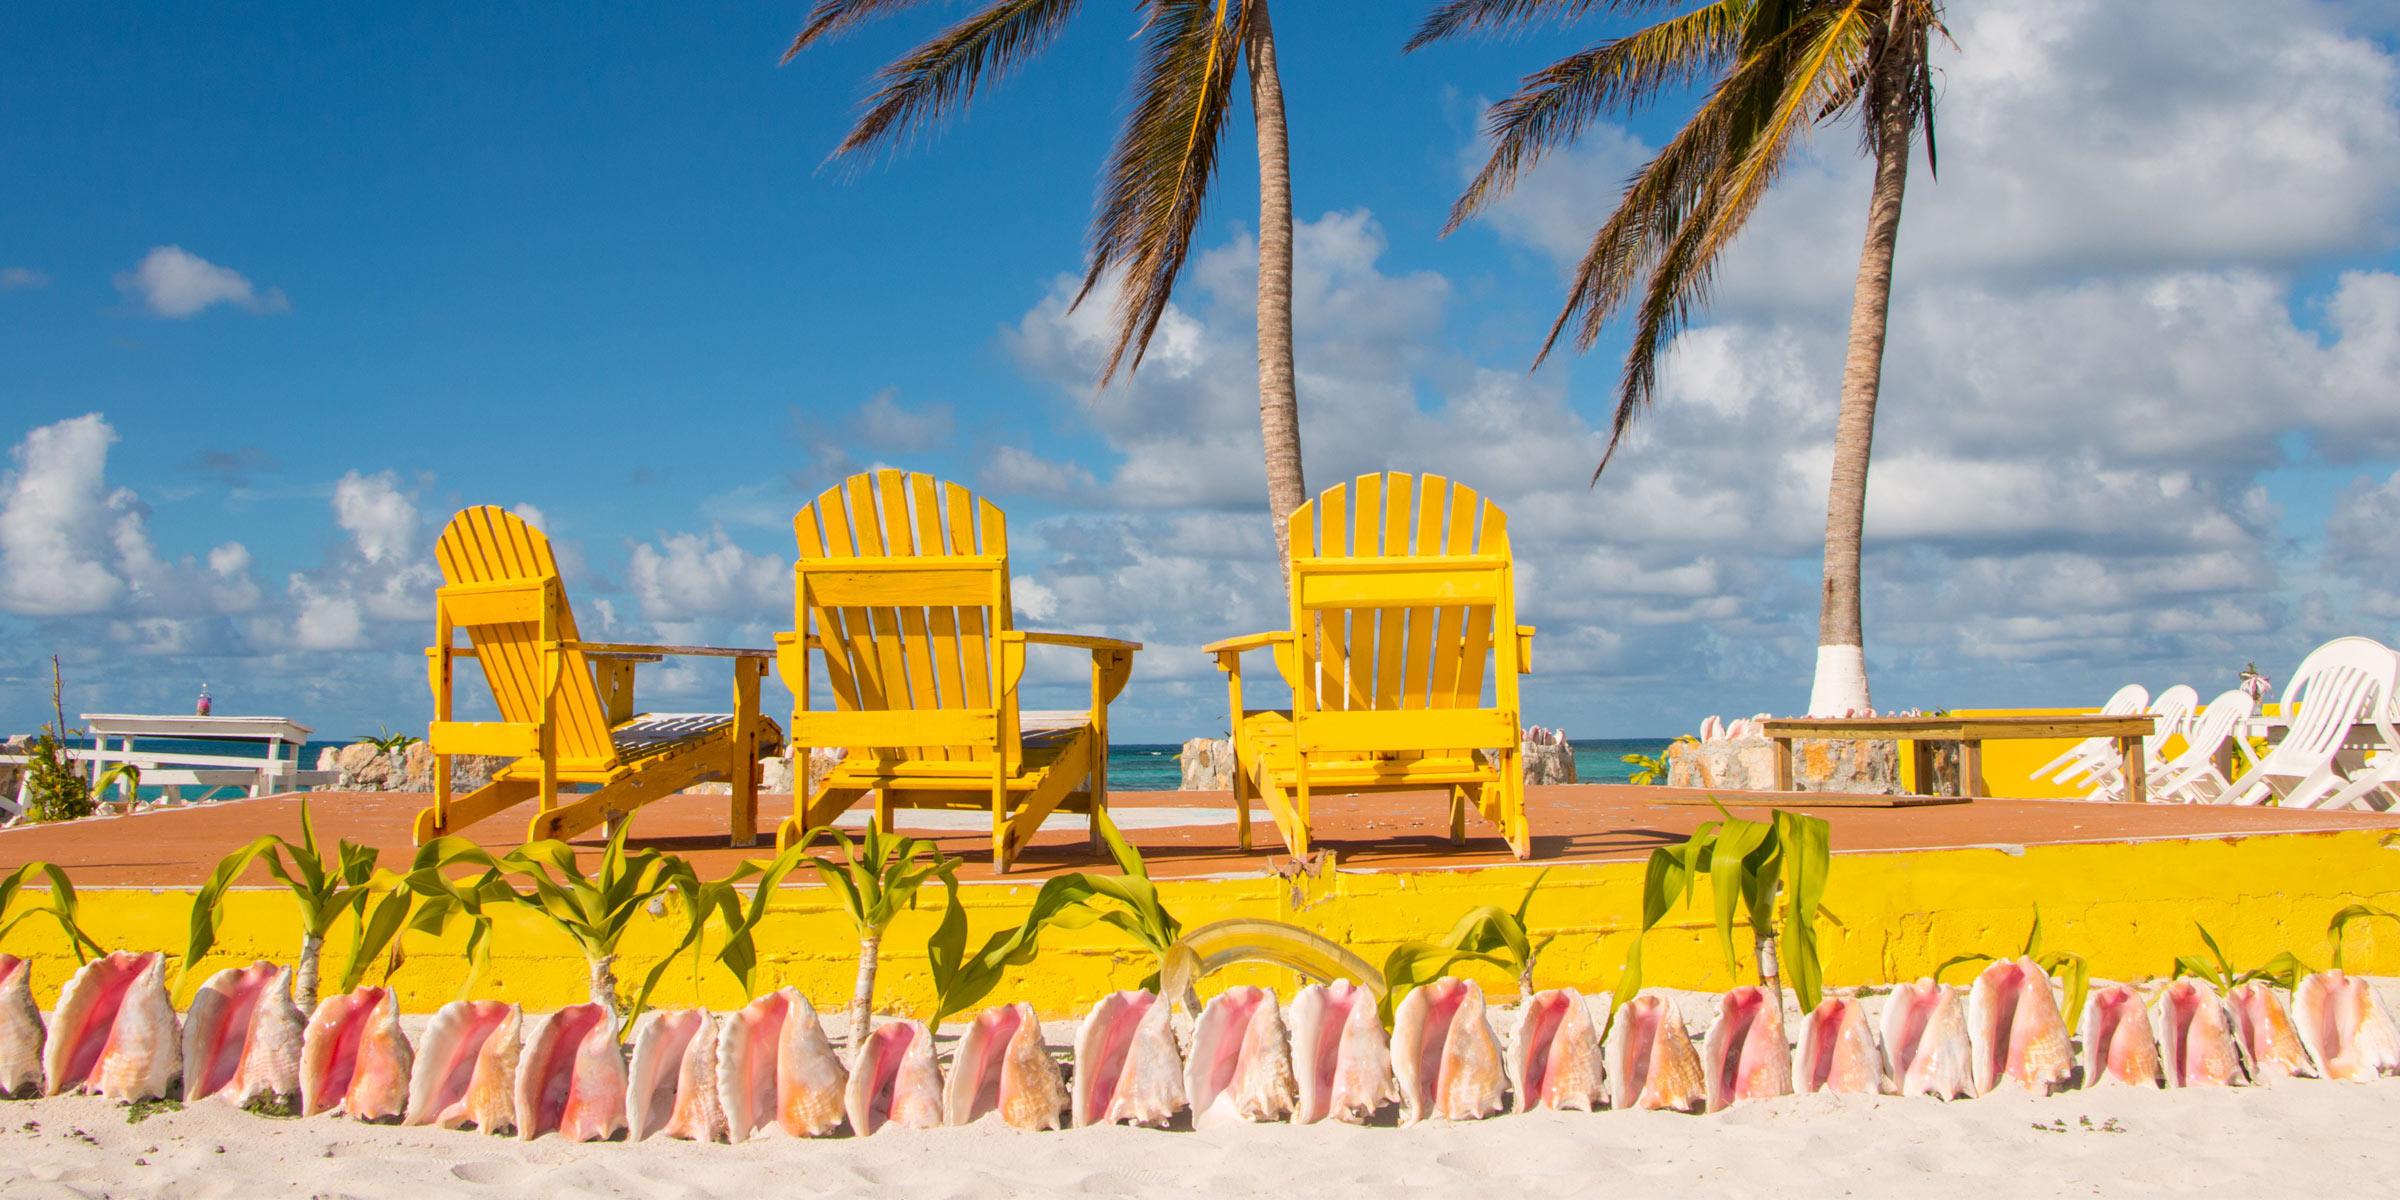 Colorful beach chairs at Cow Wreck Beach on Anegada, BVI